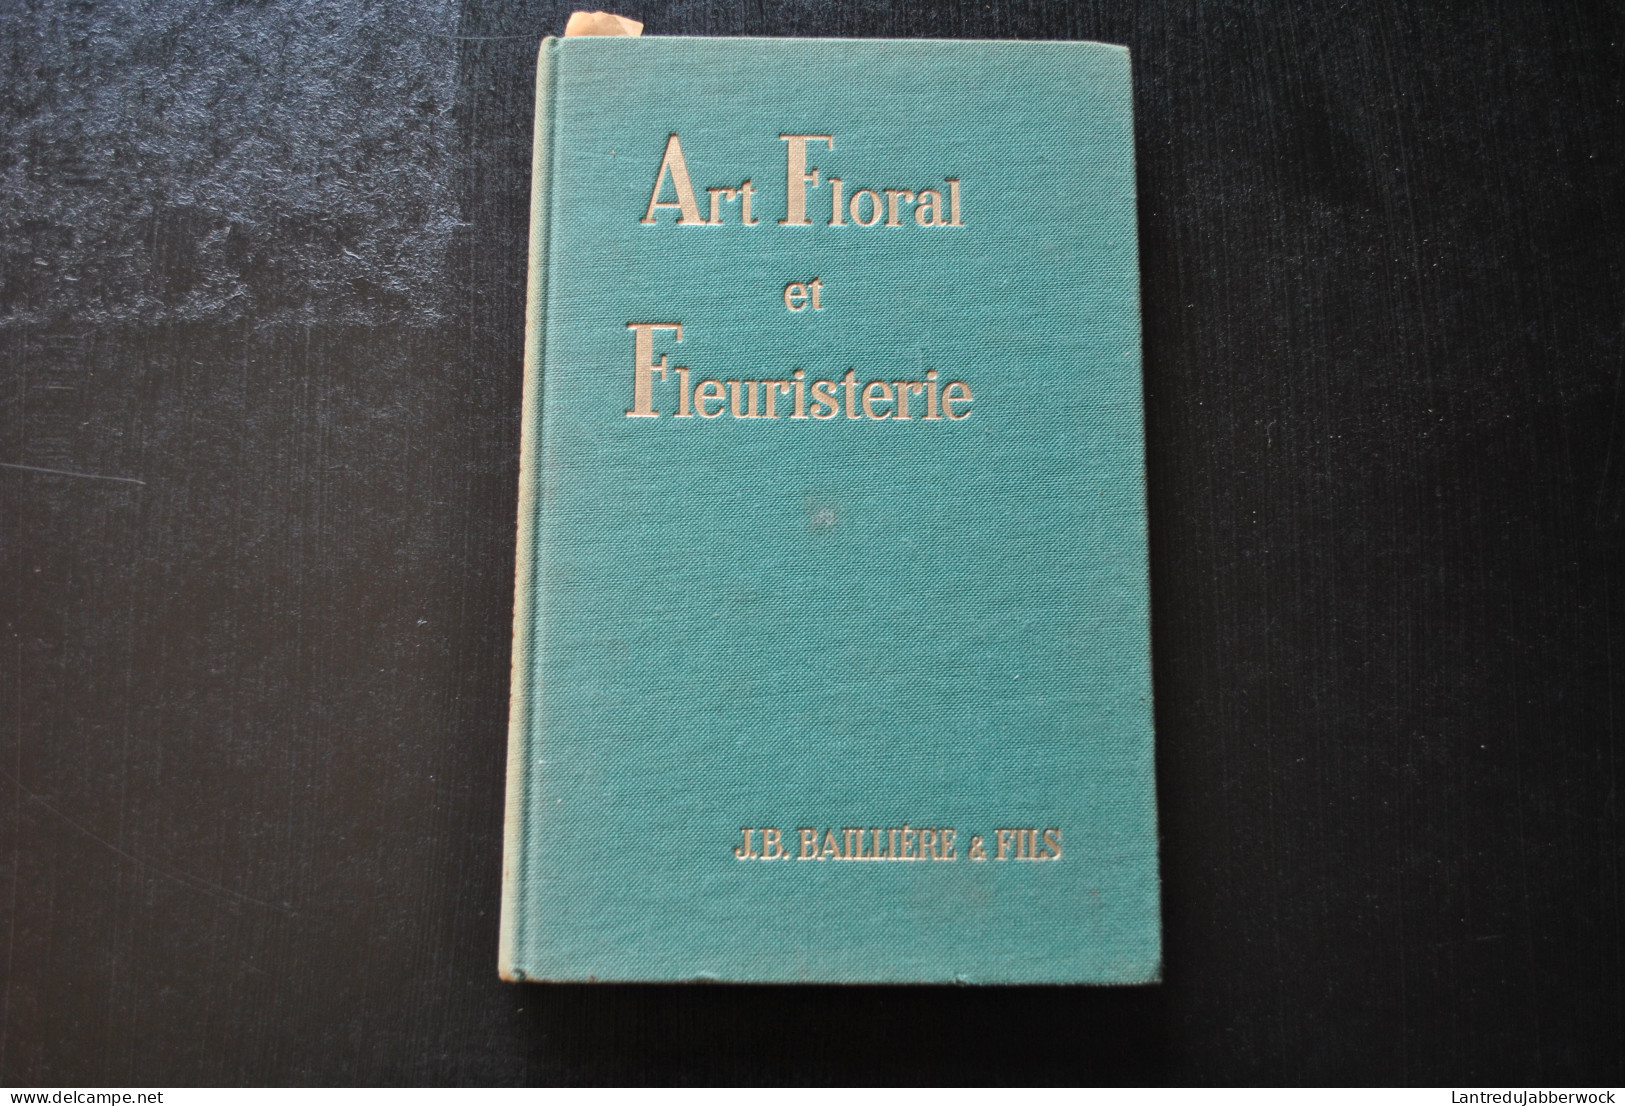 FROUTE Art Floral Et Fleuristerie Bibliothèque D'horticulture Pratique Baillière & Fils 1965 Fleuristes Professionnels  - Do-it-yourself / Technical